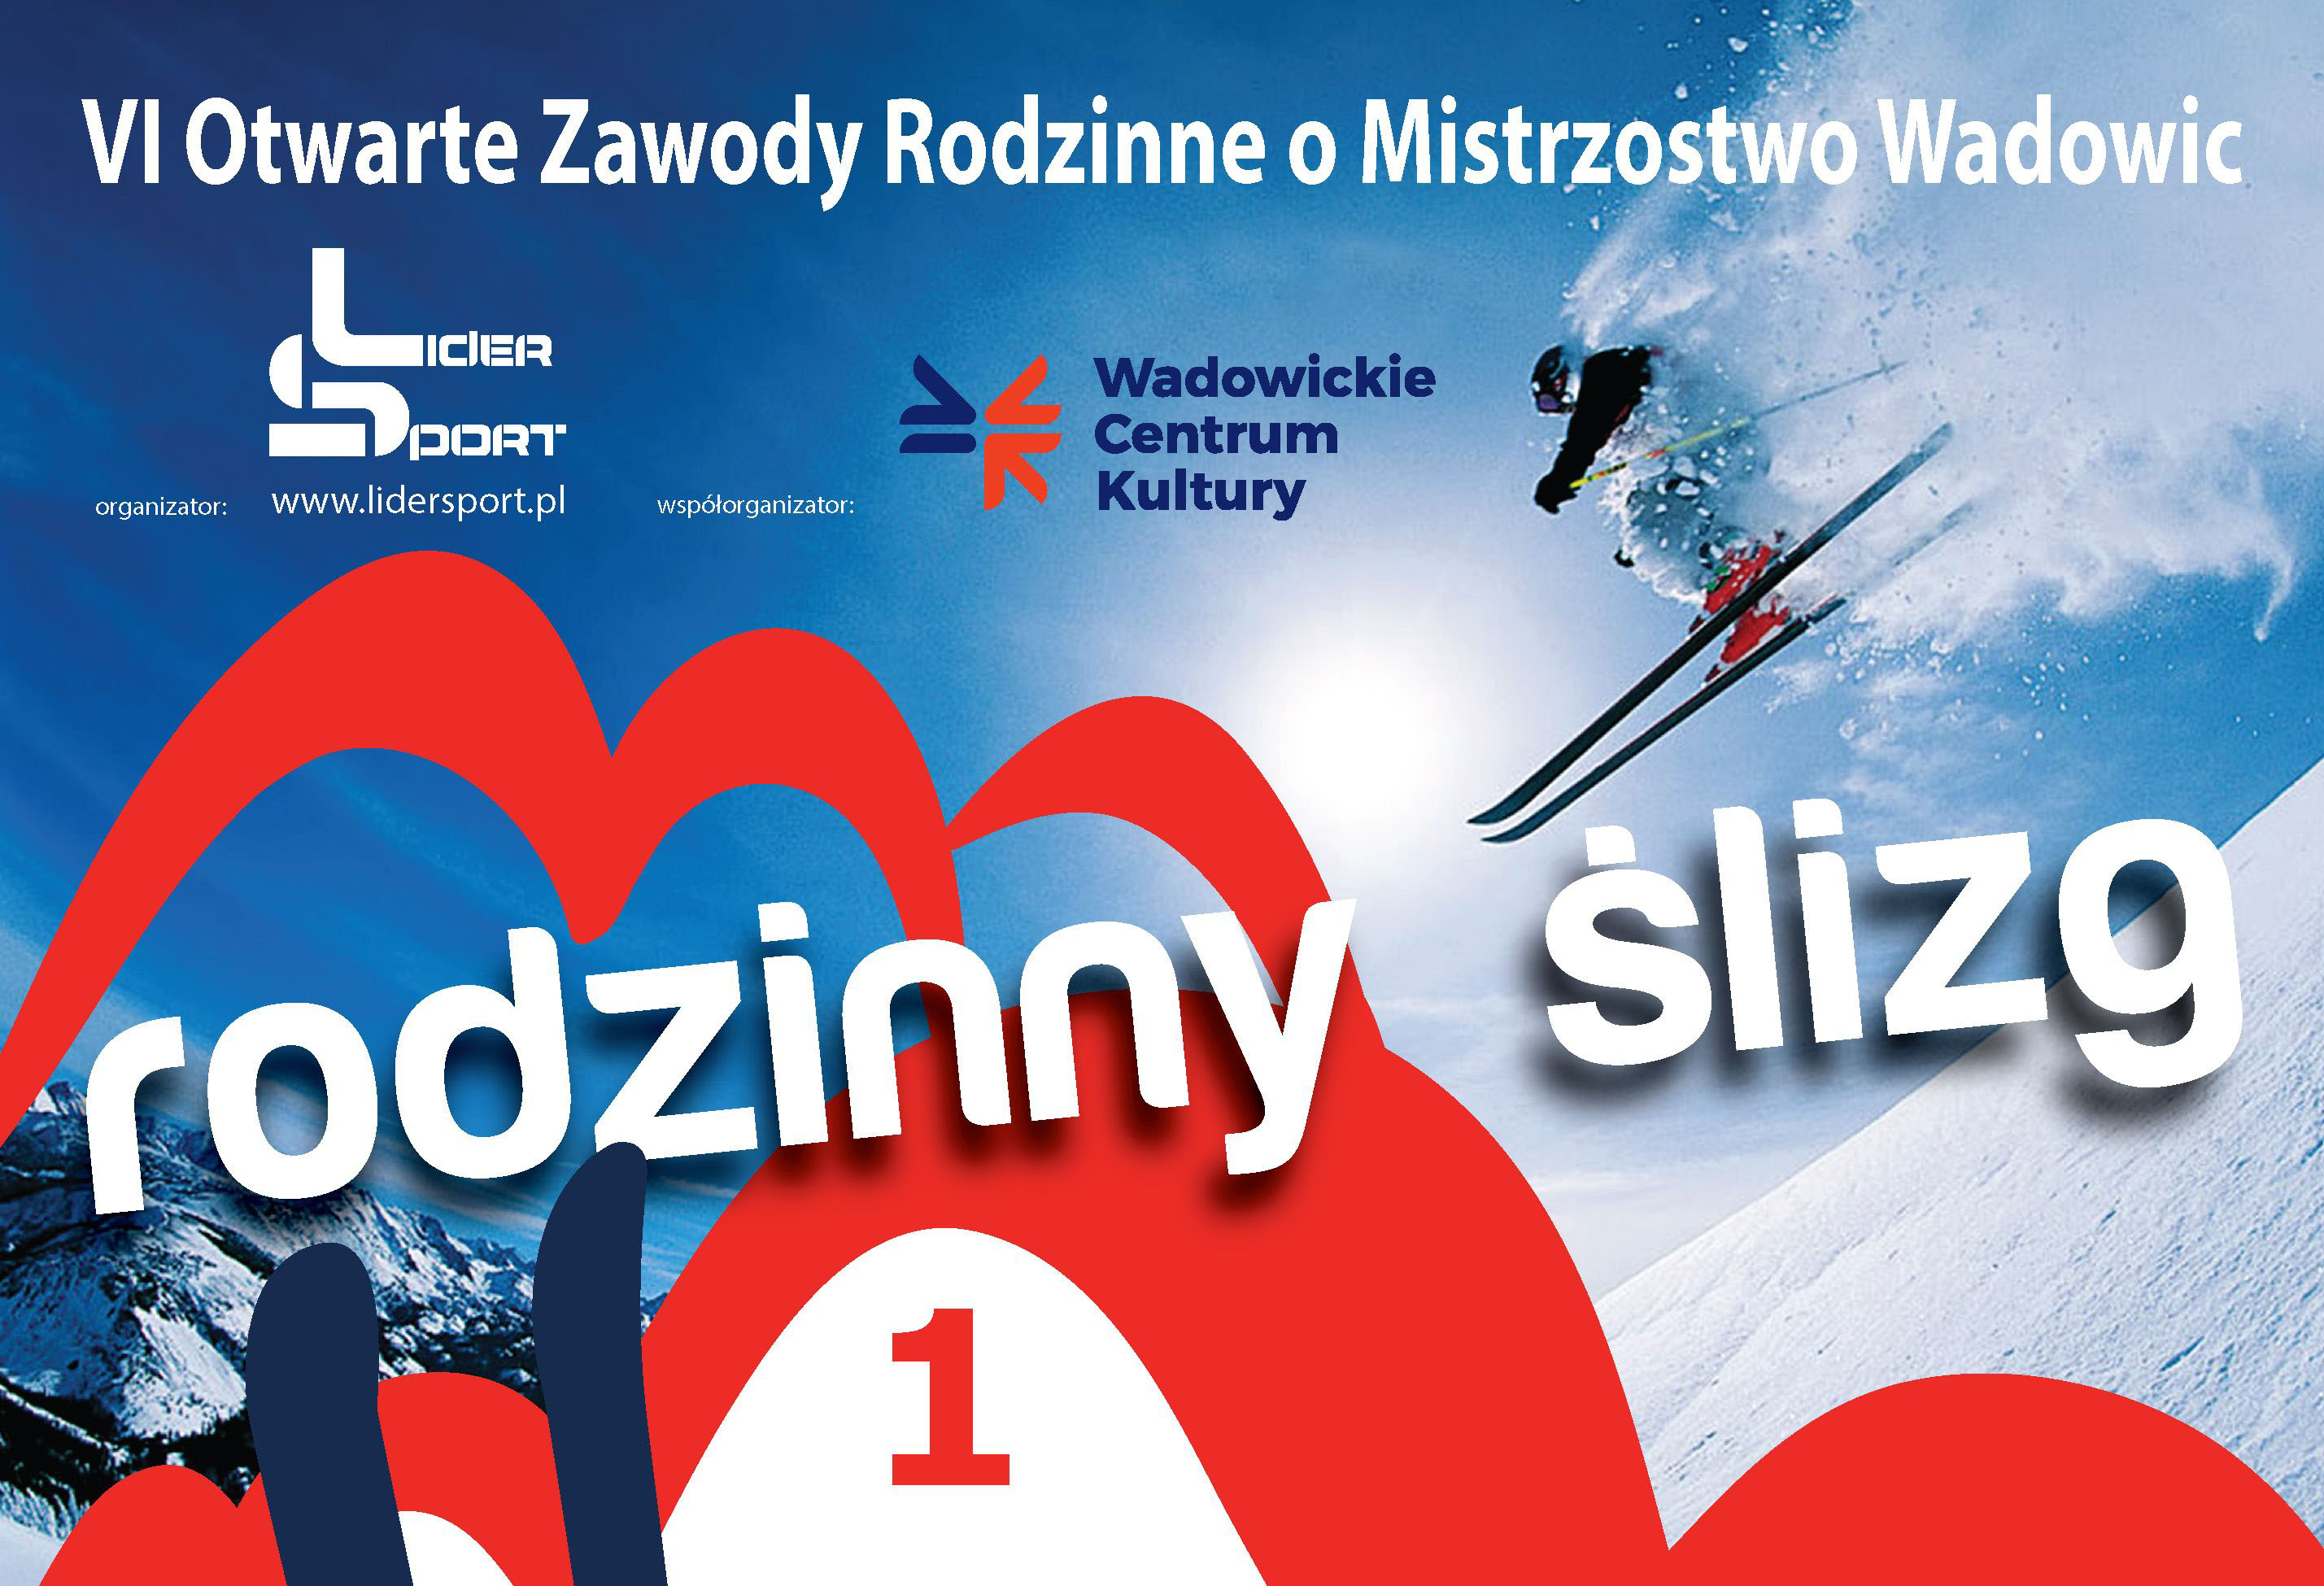 Otwarte zawody narciarskie dla rodzin 17 lutego stok Beskid w Spytkowicach